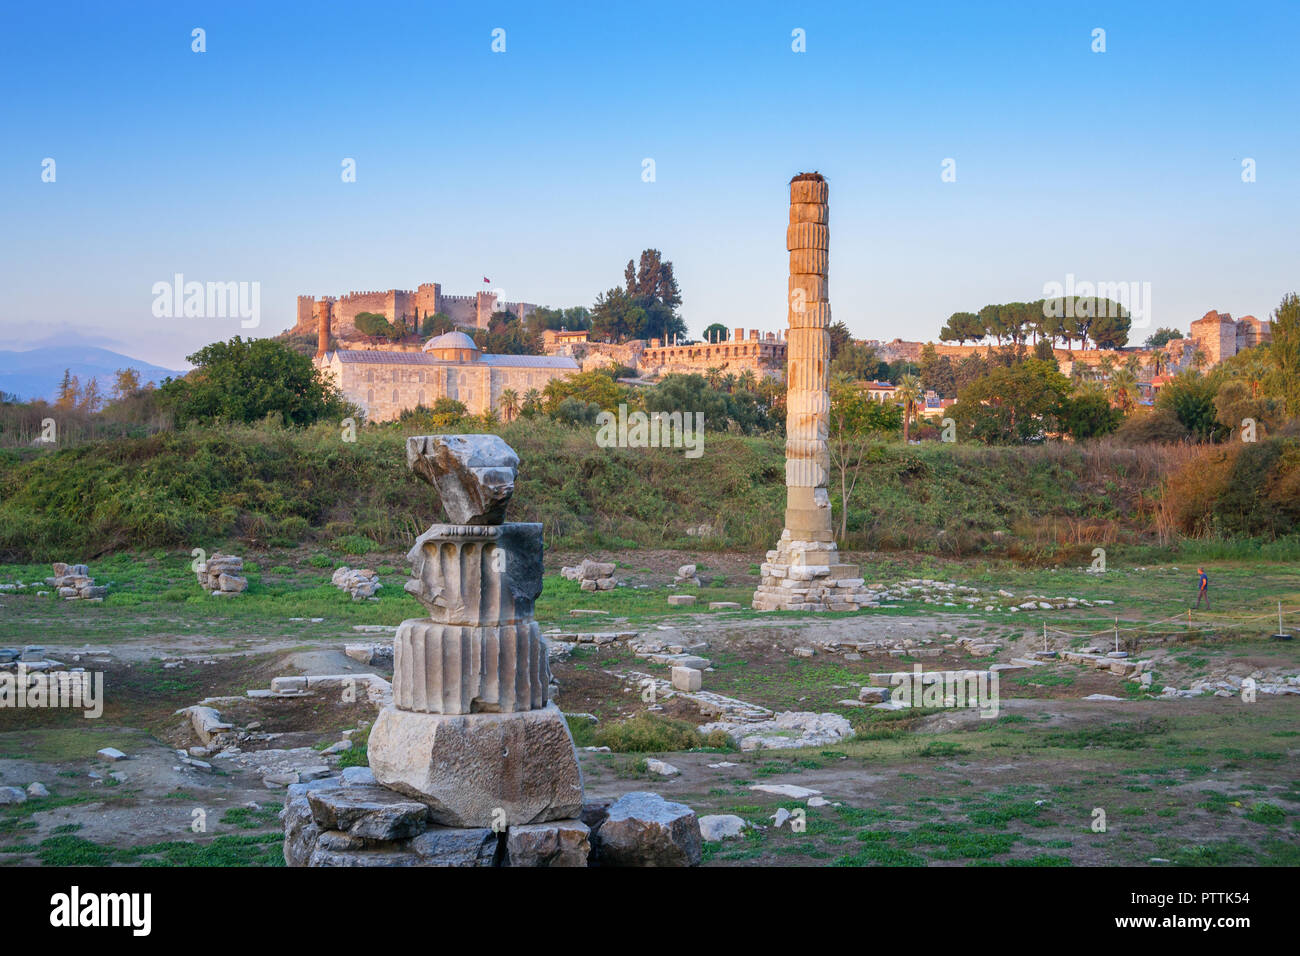 Ruines du temple d'Artémis - une des sept merveilles du monde antique - Selcuk, Turquie. Banque D'Images